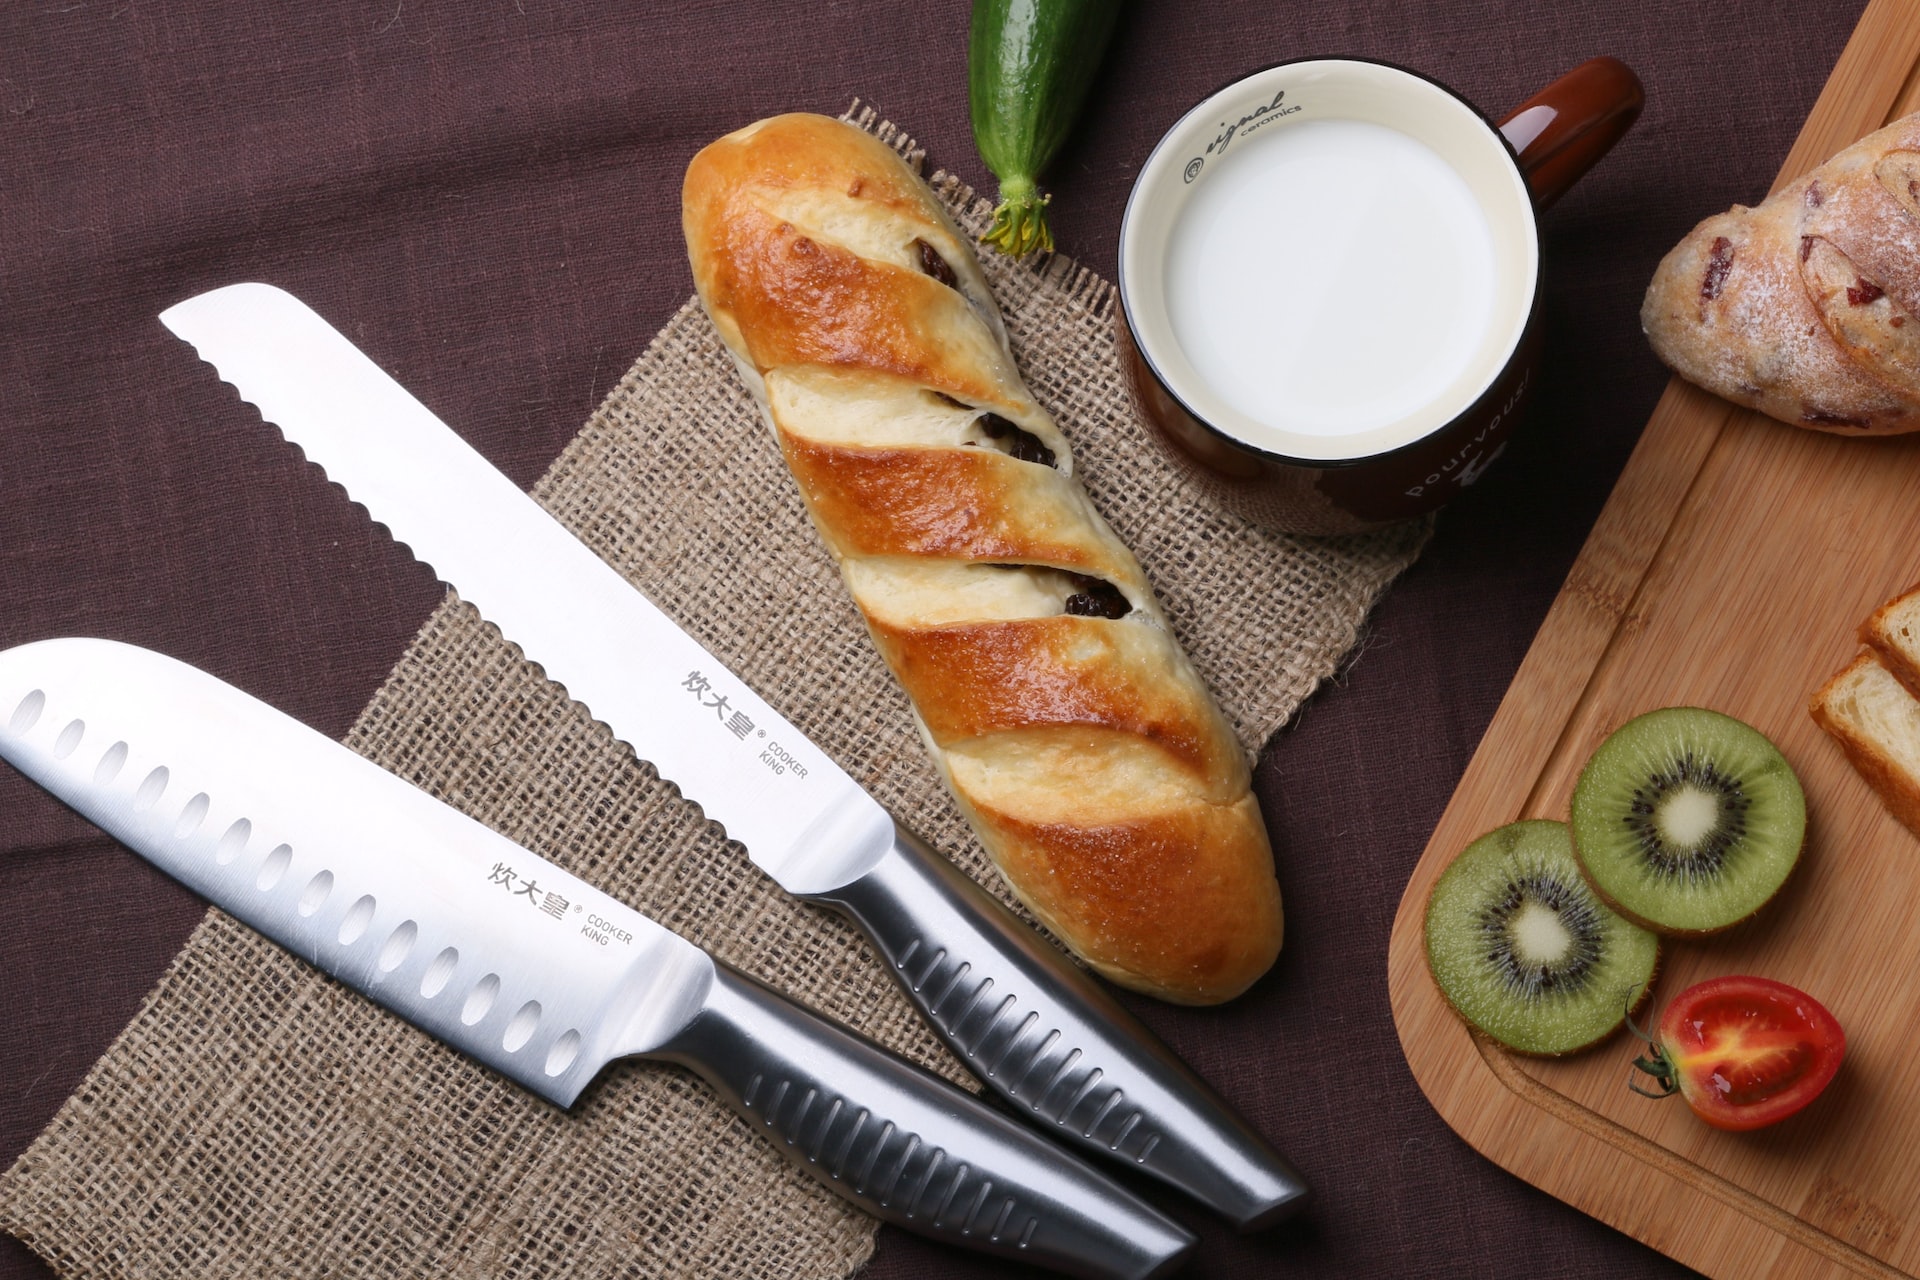 Професионално оборудване: Разпознайте качествените ножове за вашите помощници в кухнята